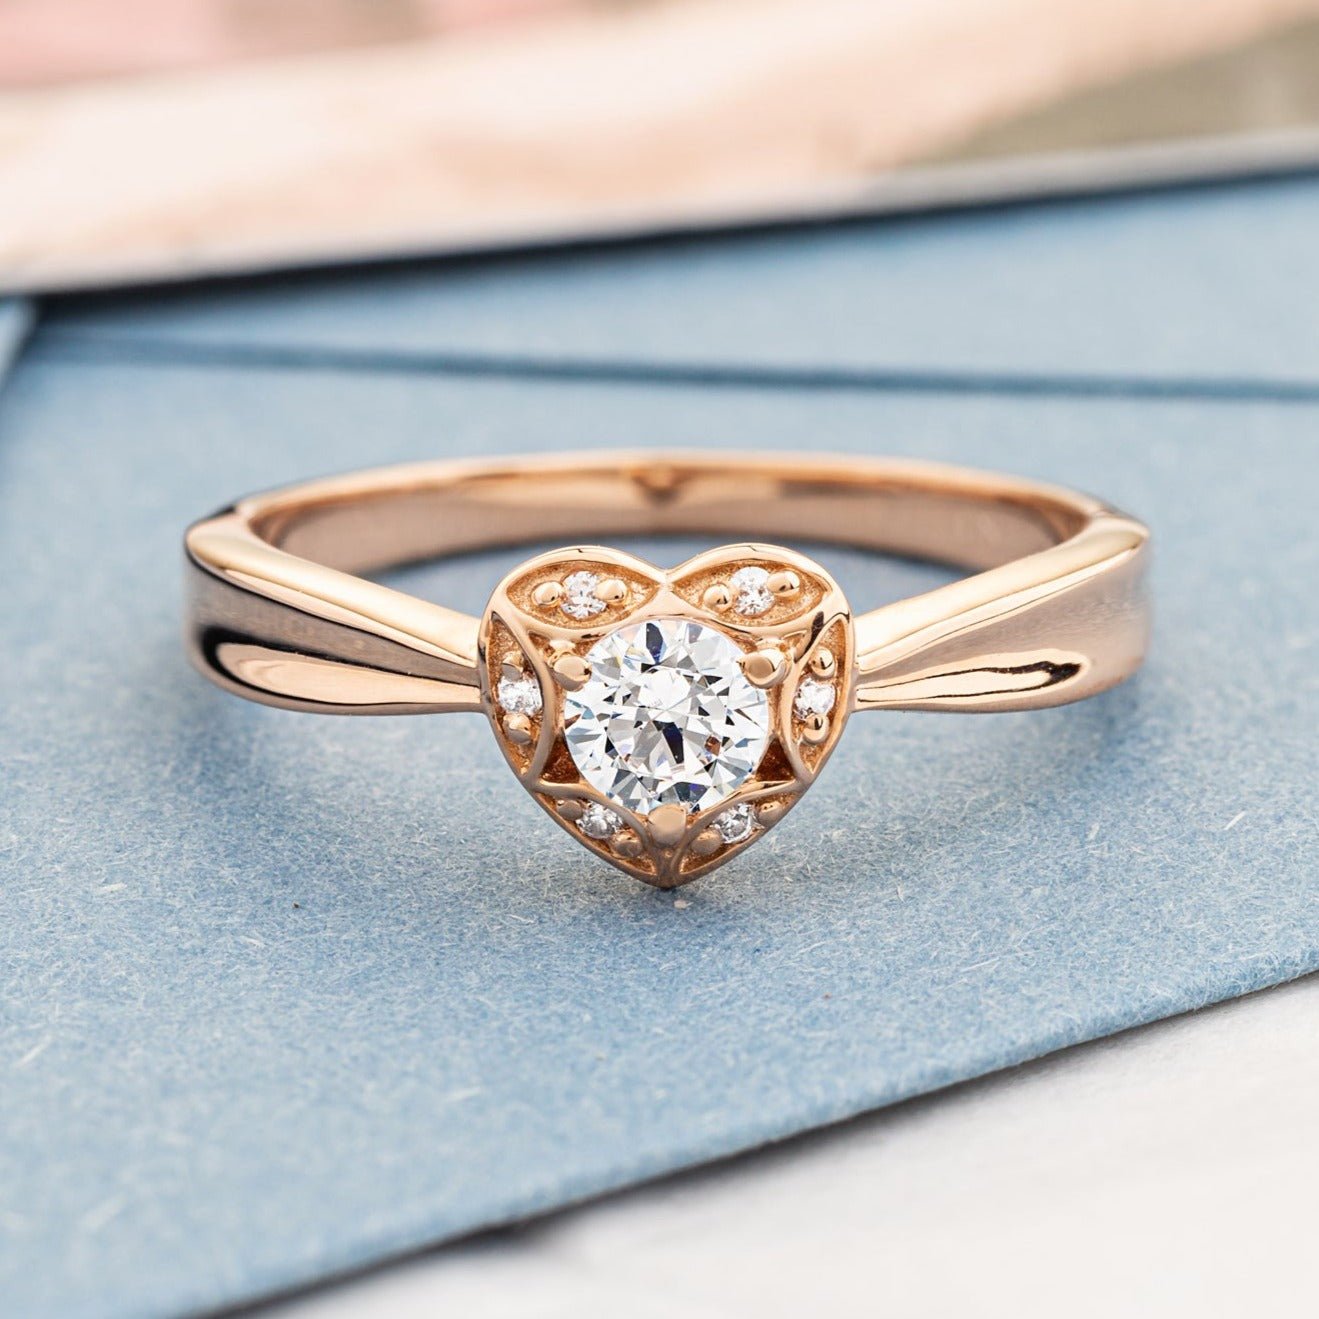 Heart shaped diamond engagement ring - escorialjewelry